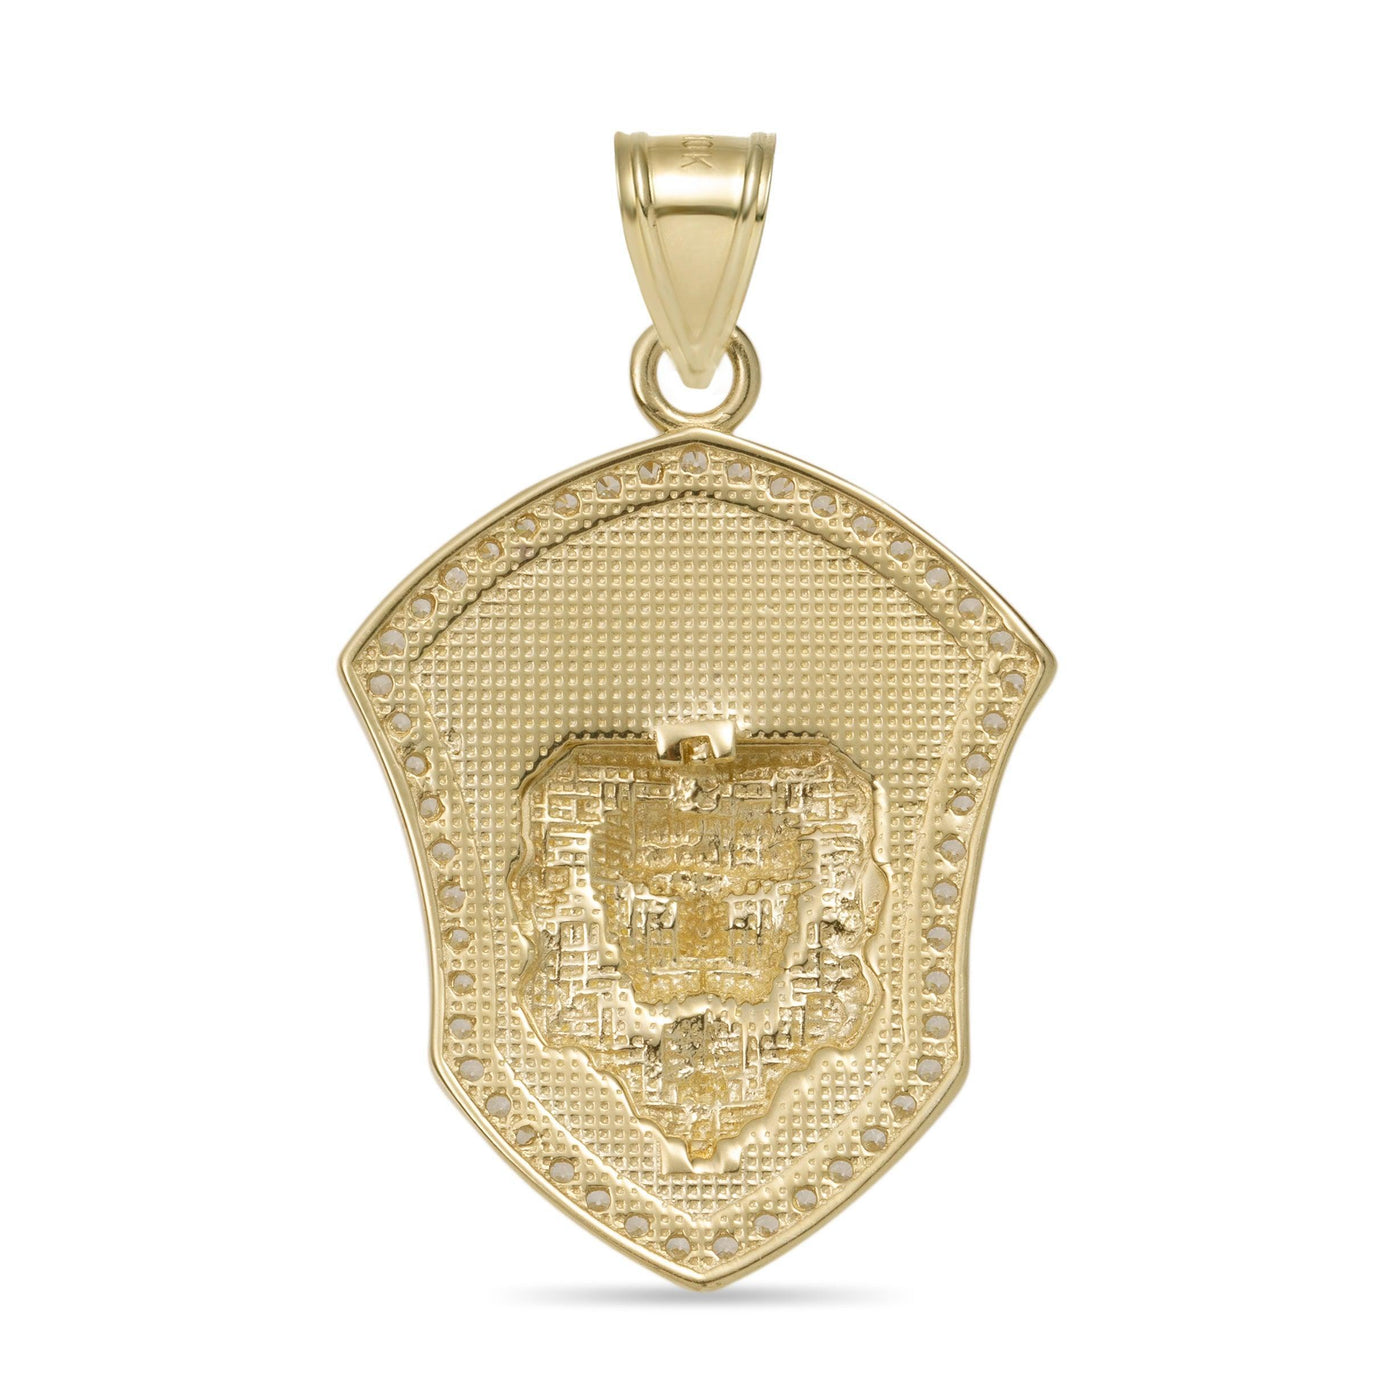 1 3/8" CZ Lion King Medallion Pendant 10K Yellow Gold - bayamjewelry